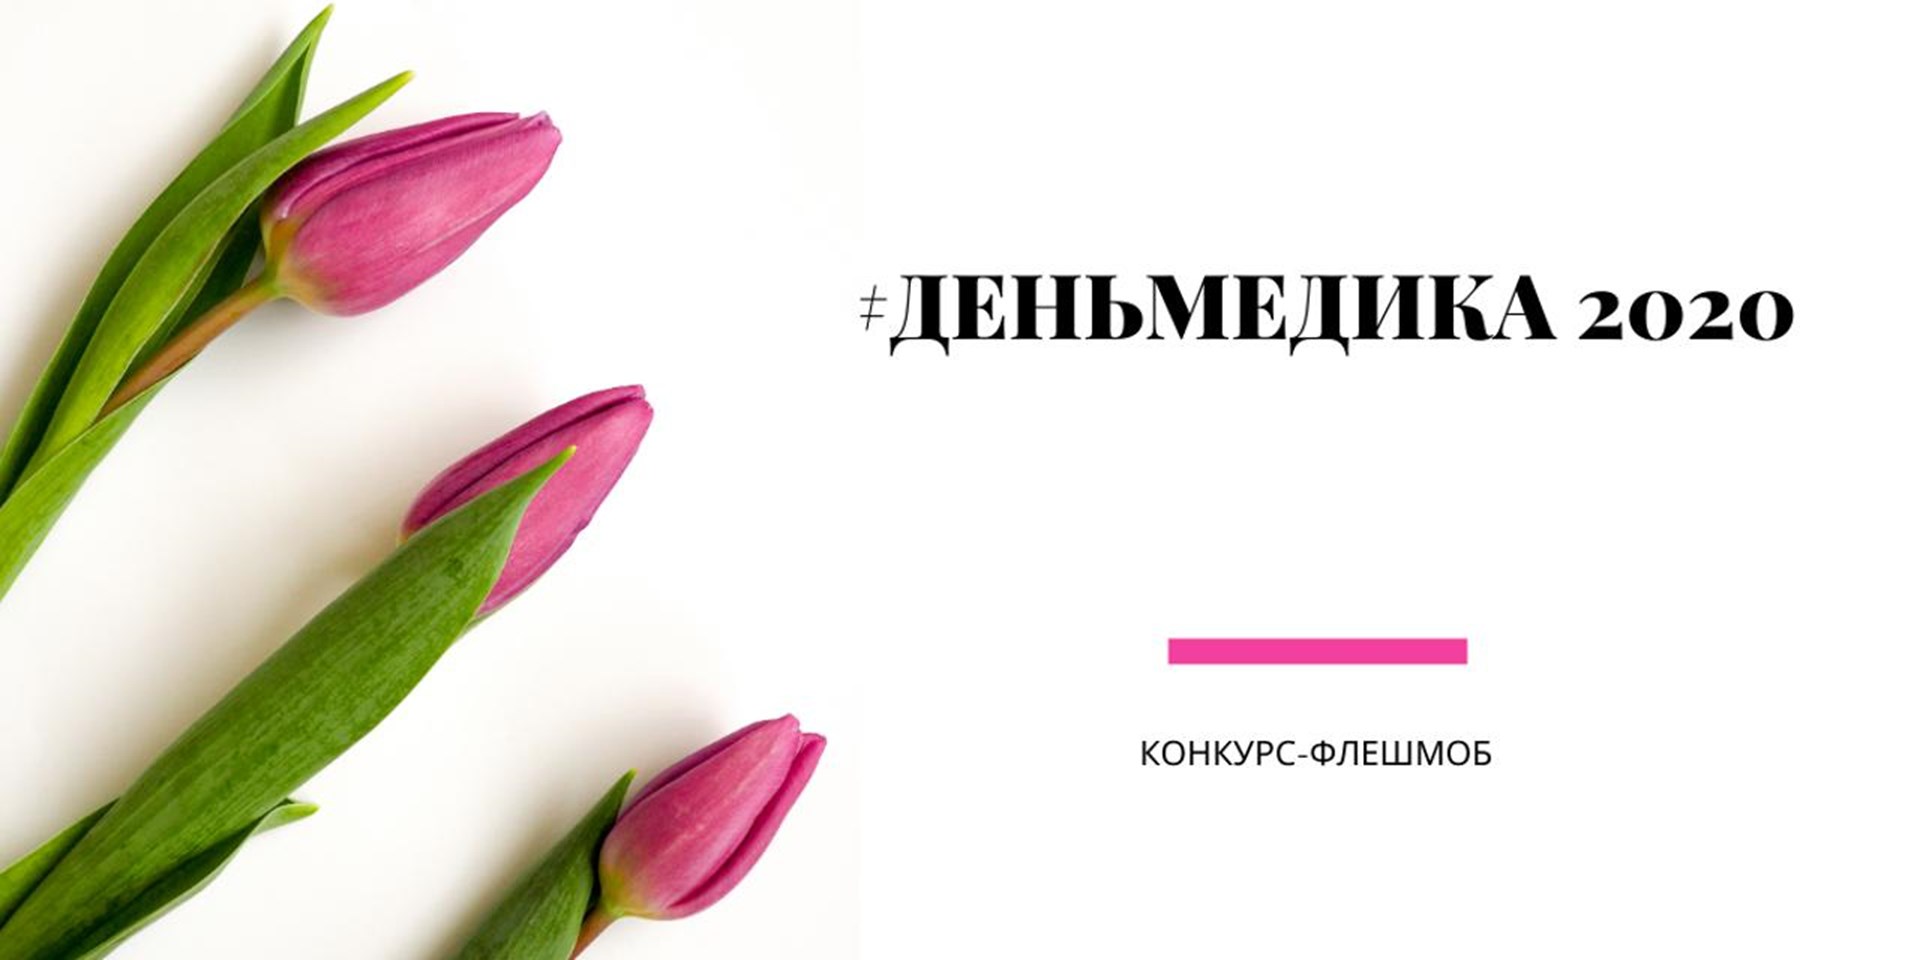 18.06.2020 Москва. С 18 по 21 июня состоится конкурс-флешмоб #ДЕНЬМЕДИКА2020